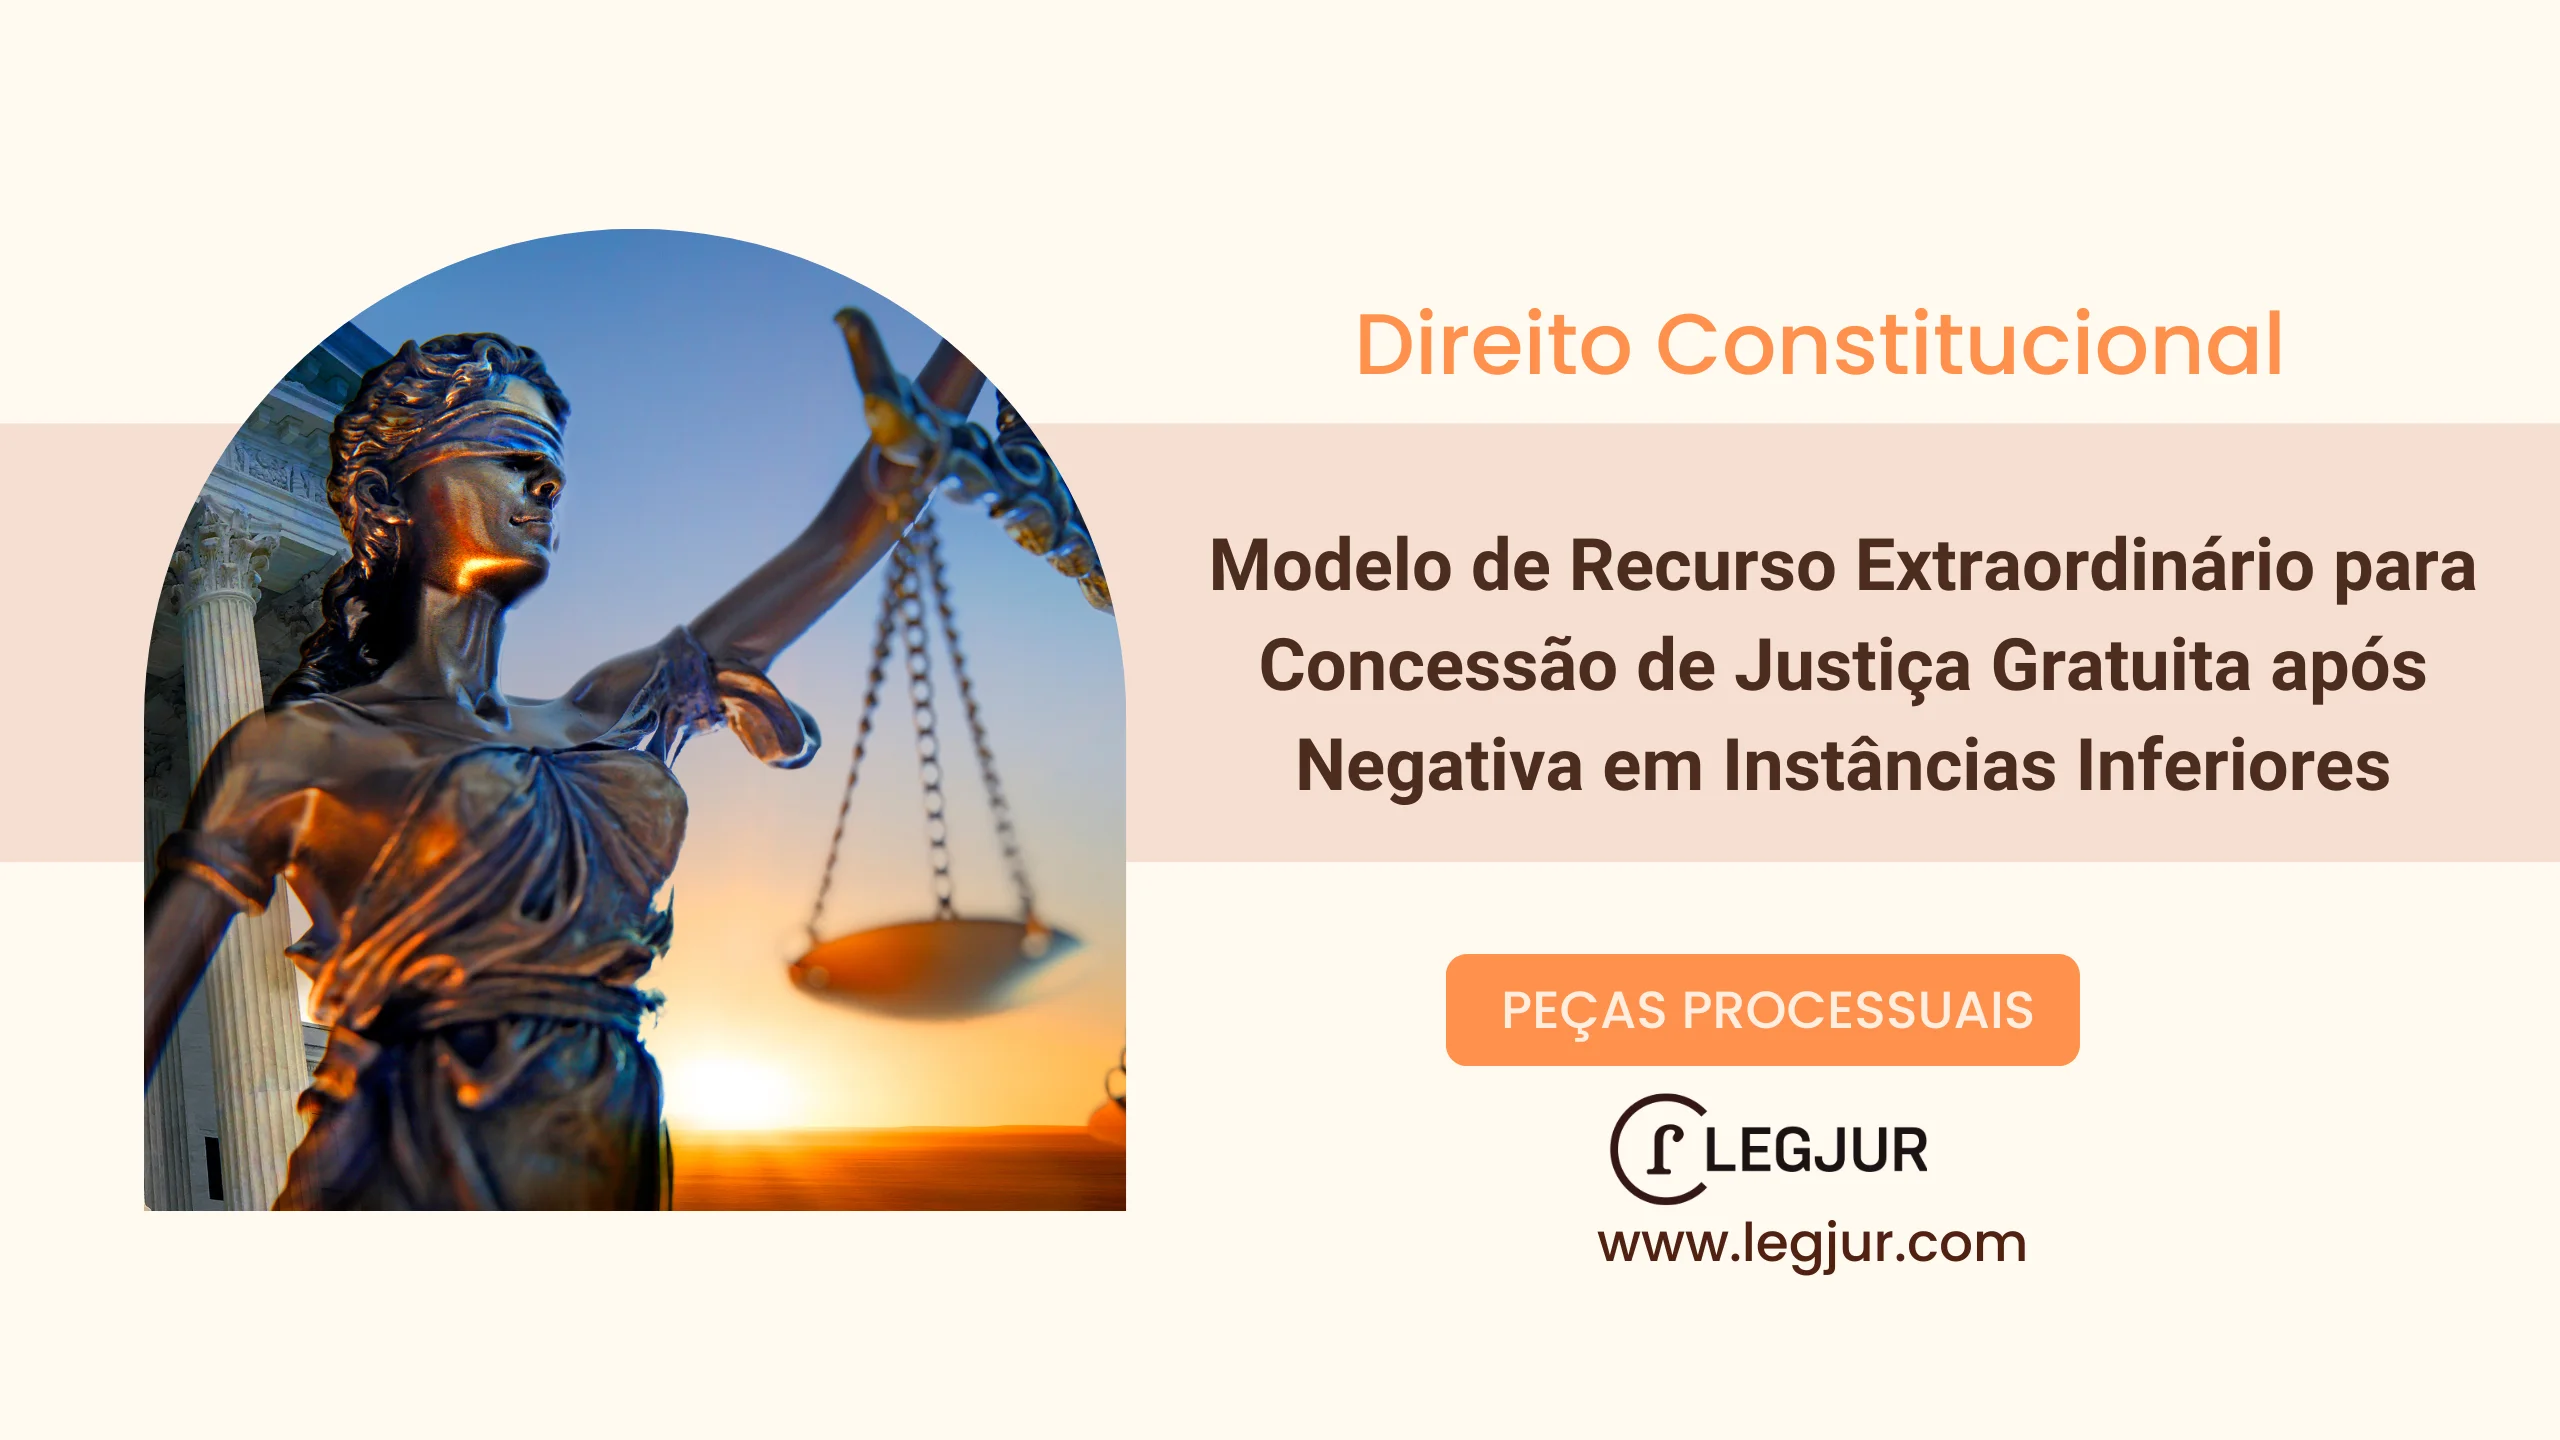 Modelo de Recurso Extraordinário para Concessão de Justiça Gratuita após Negativa em Instâncias Inferiores